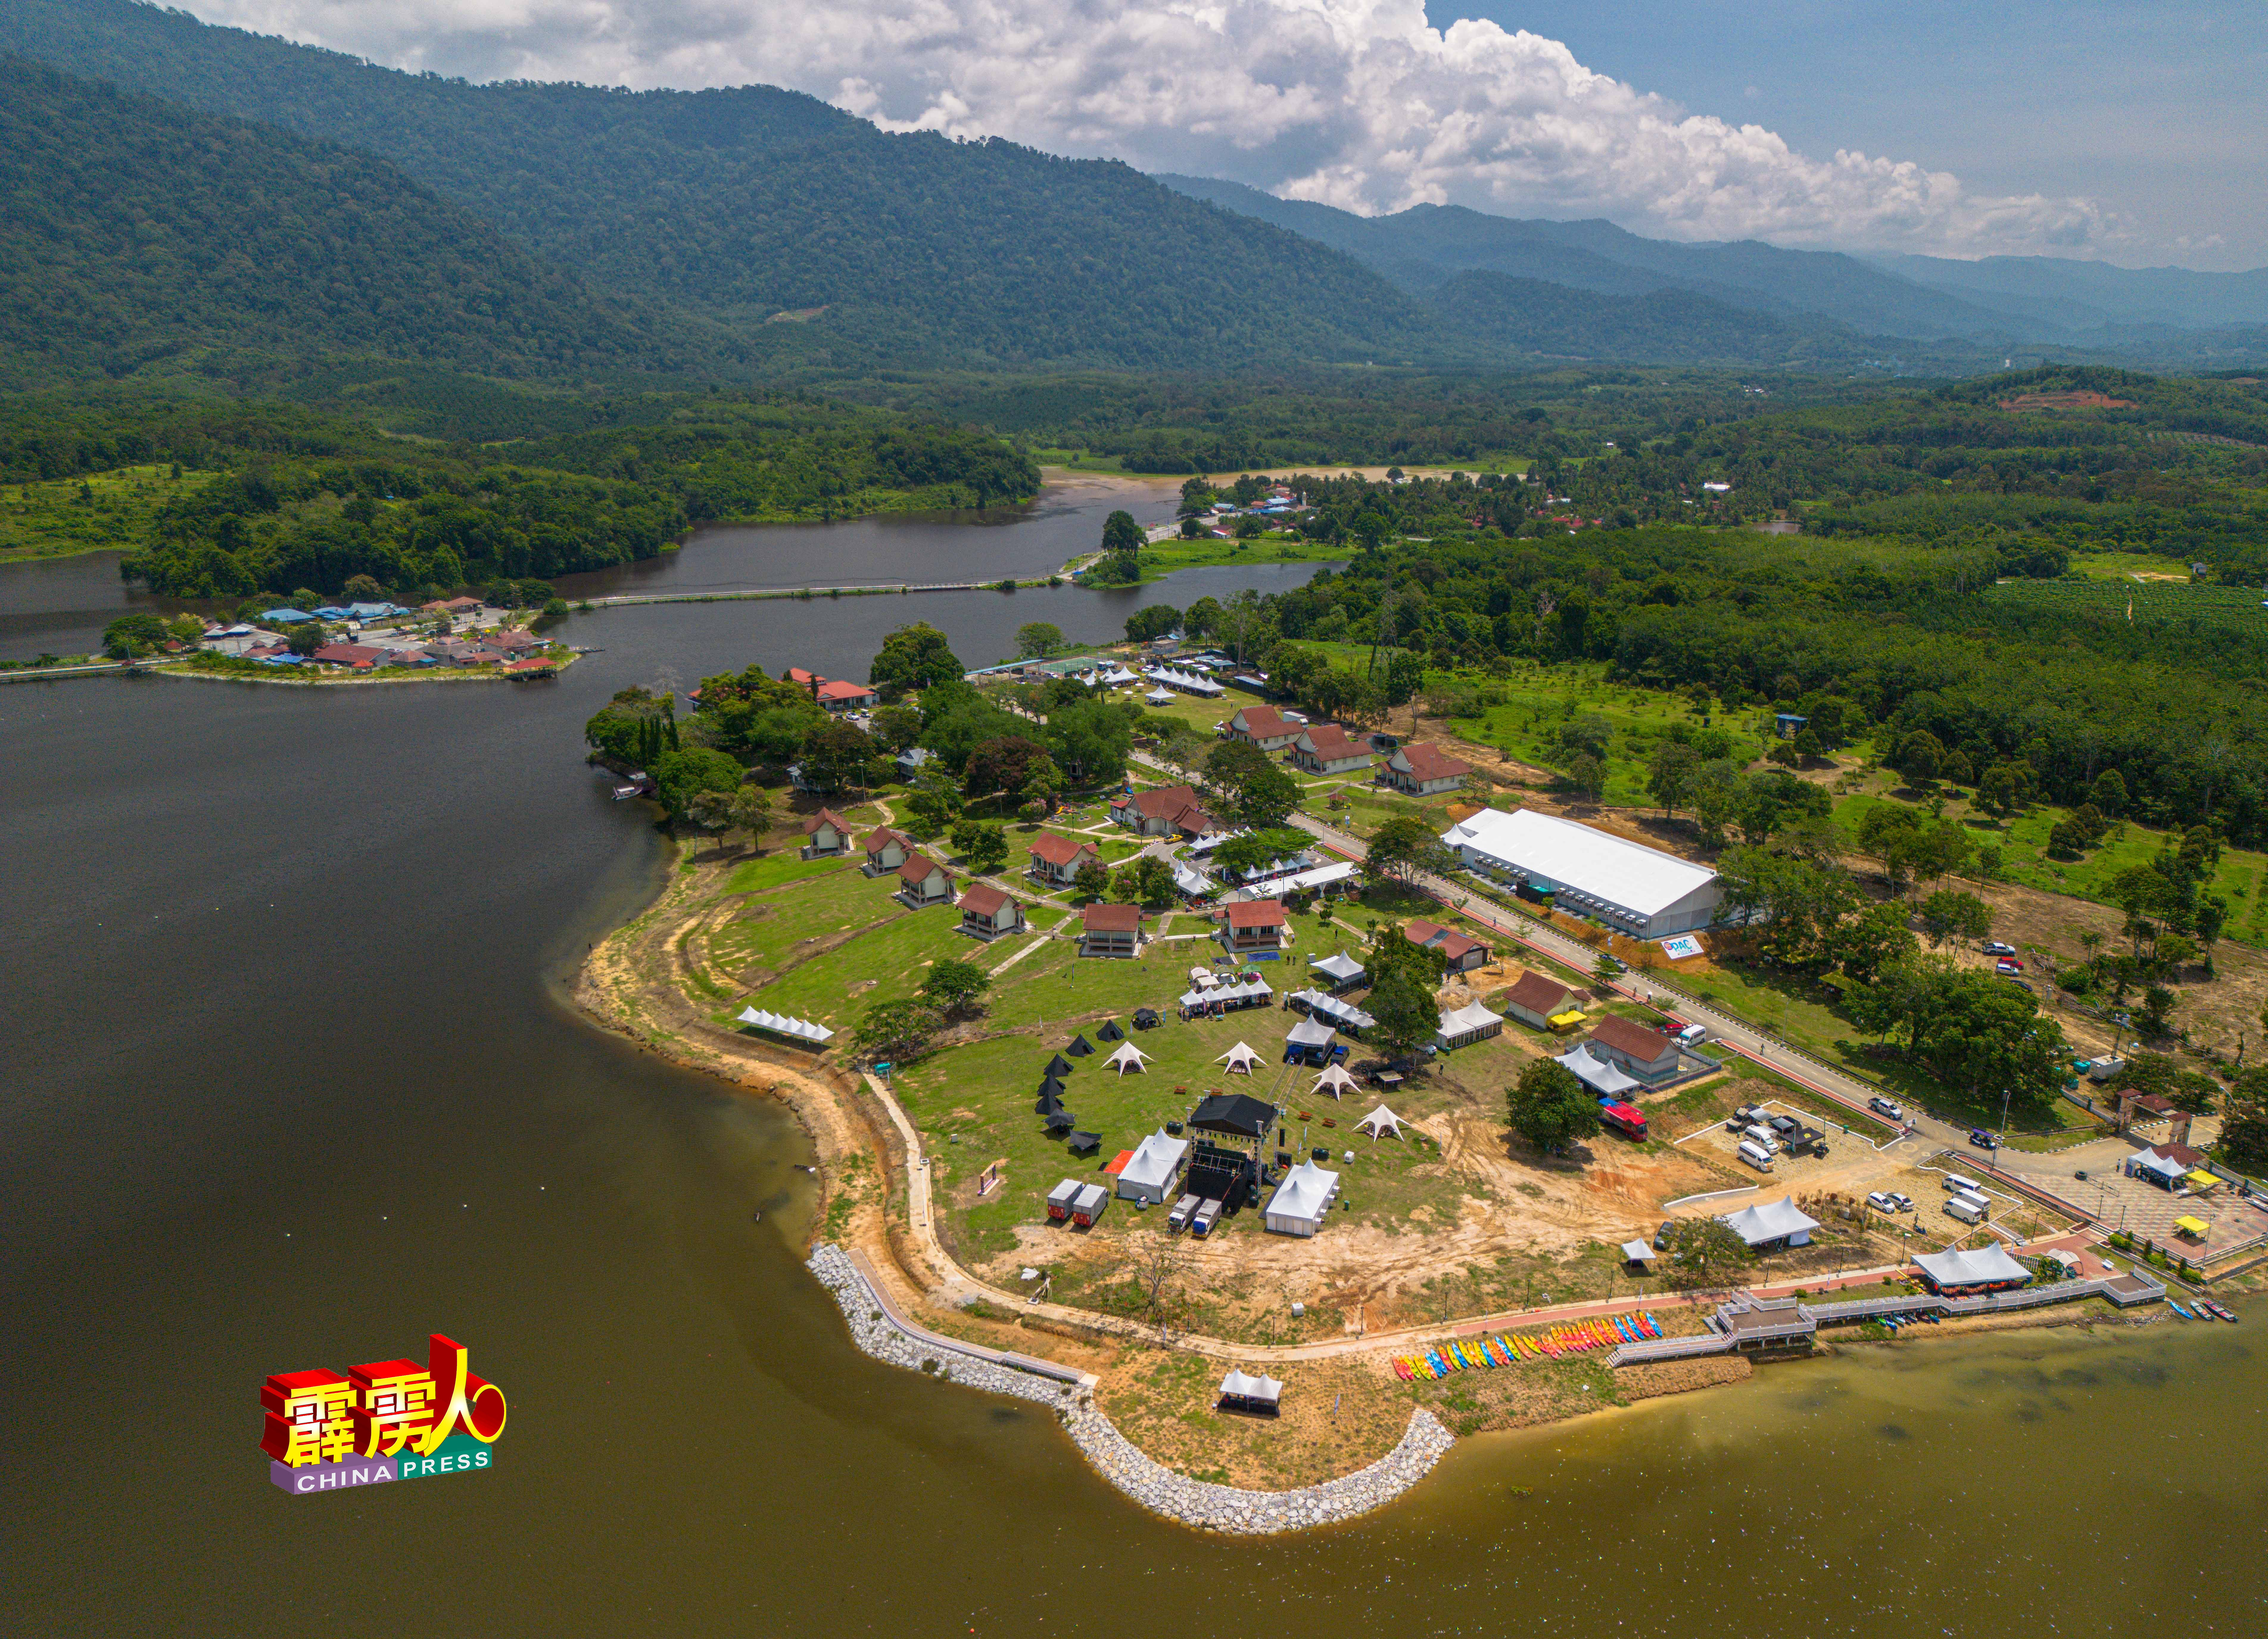 为期三天两夜的“2024玲珑农业嘉年华会”（PAC 2024），从5月17日至19日，一连三天在玲珑拉班湖渡假村（Tasik Raban Resort）举行。